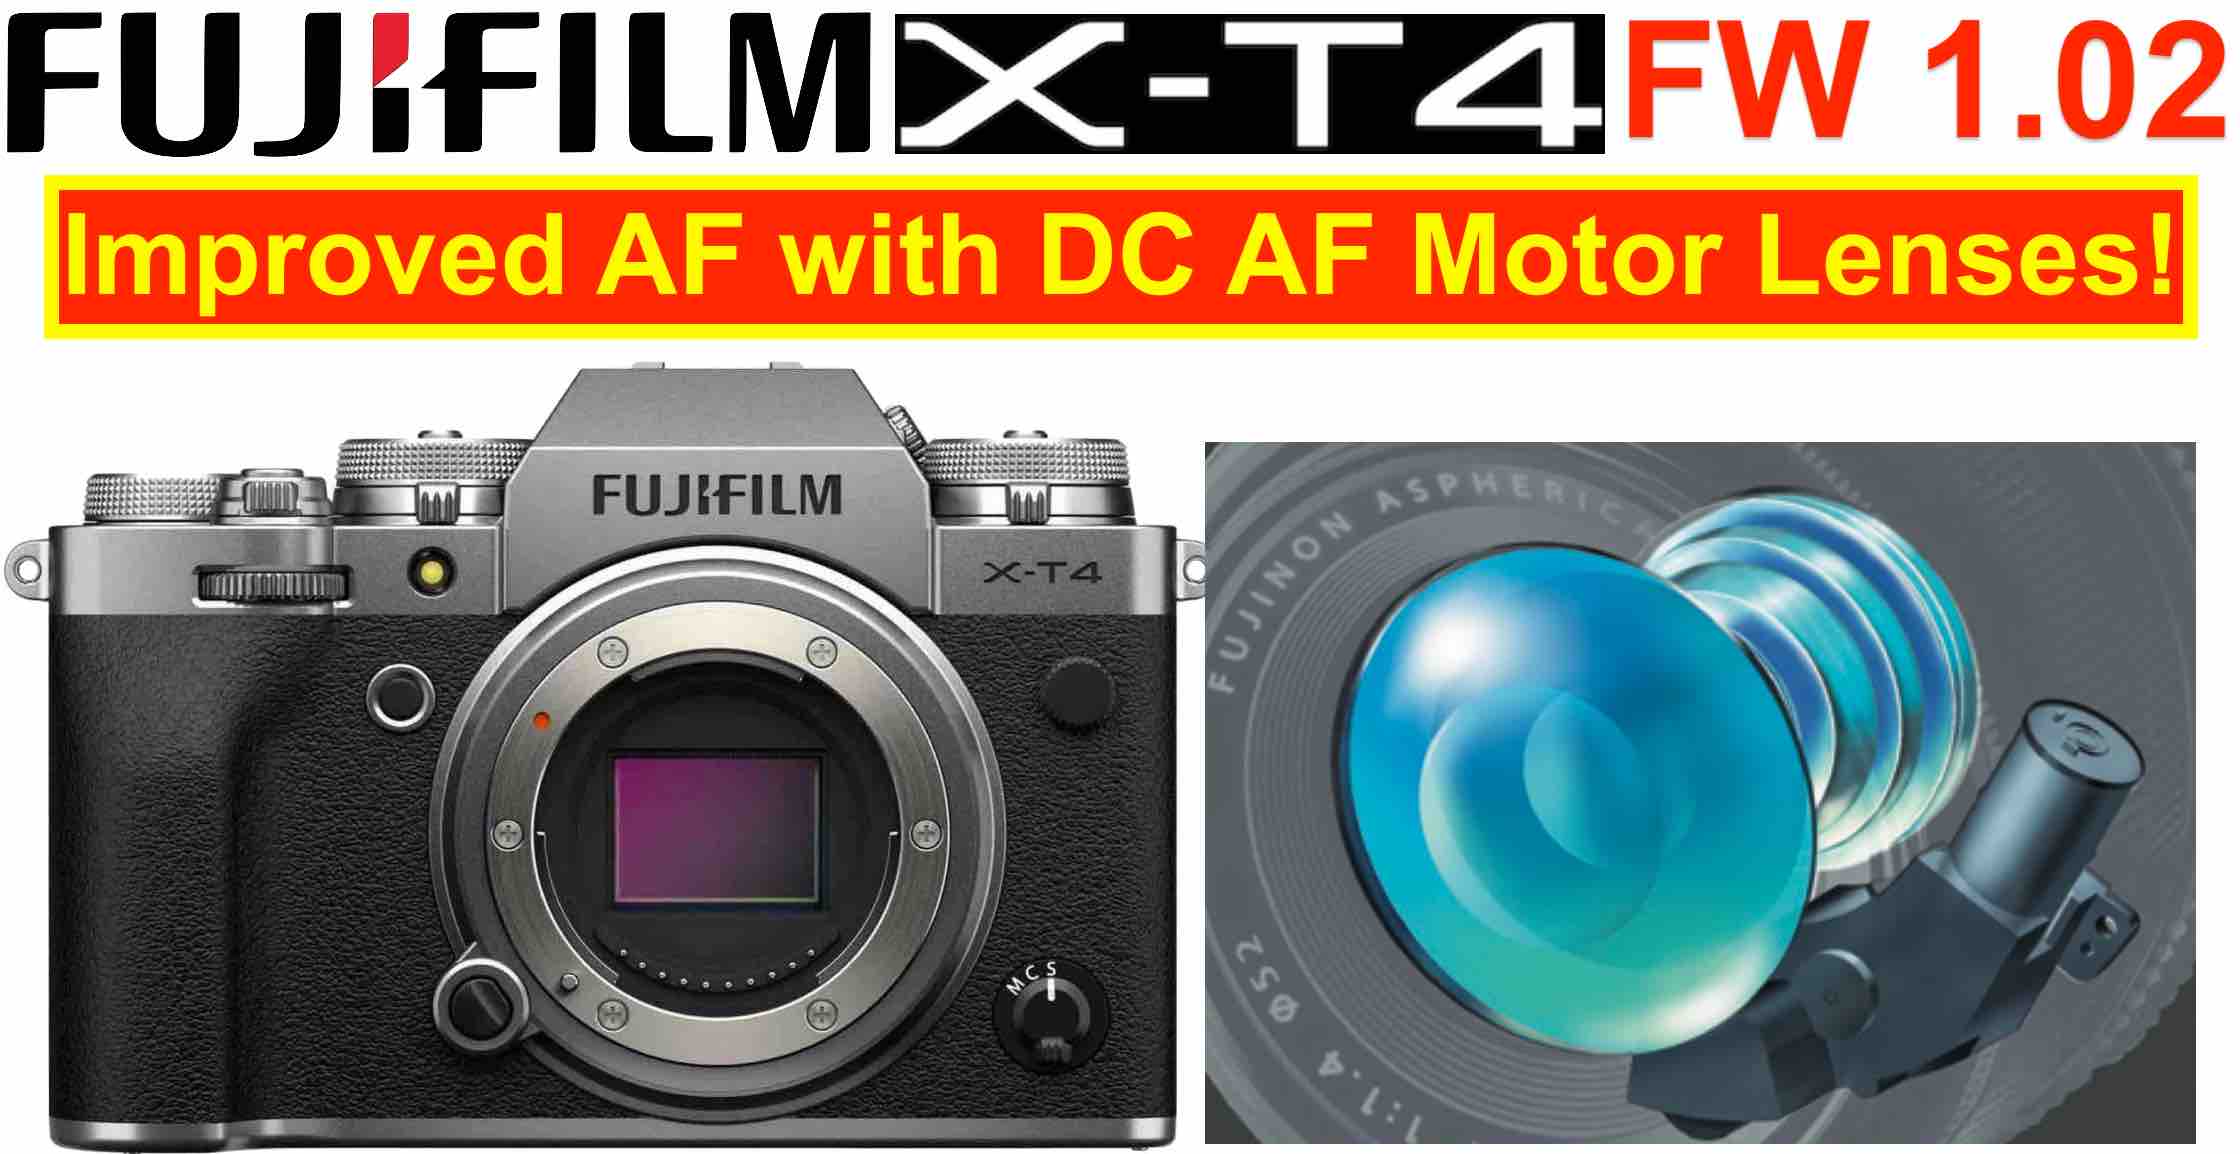 Fujifilm X-T4 1.02 Improves Autofocus with Fujinon Lenses (+ Last Spaces for Rico's Fuji X Workshop) - Fuji Rumors